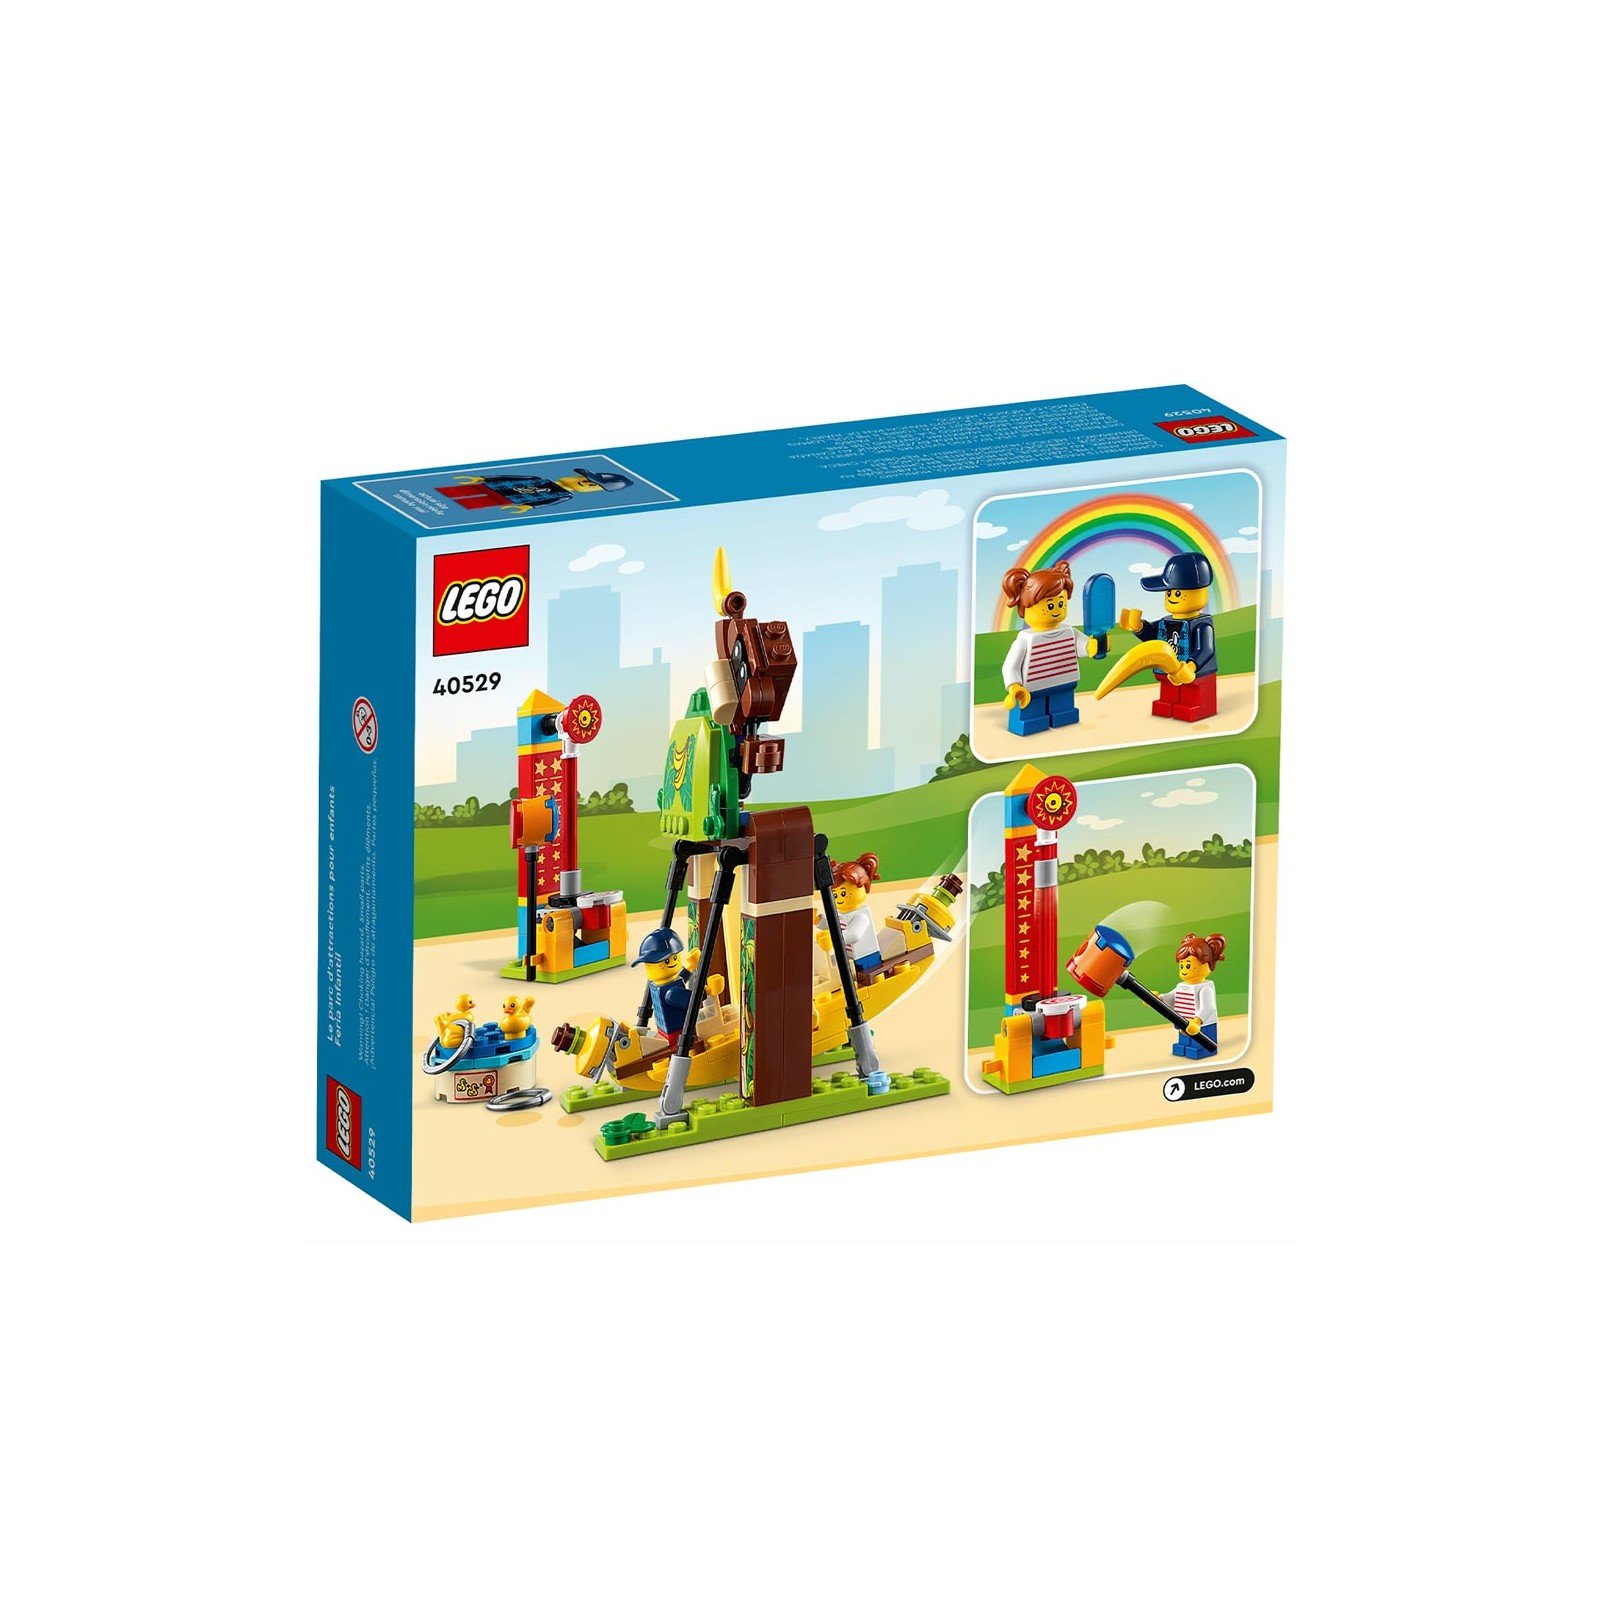 LEGO - Le parc d'attractions - 2 à 4 ans - JEUX, JOUETS -   - Livres + cadeaux + jeux